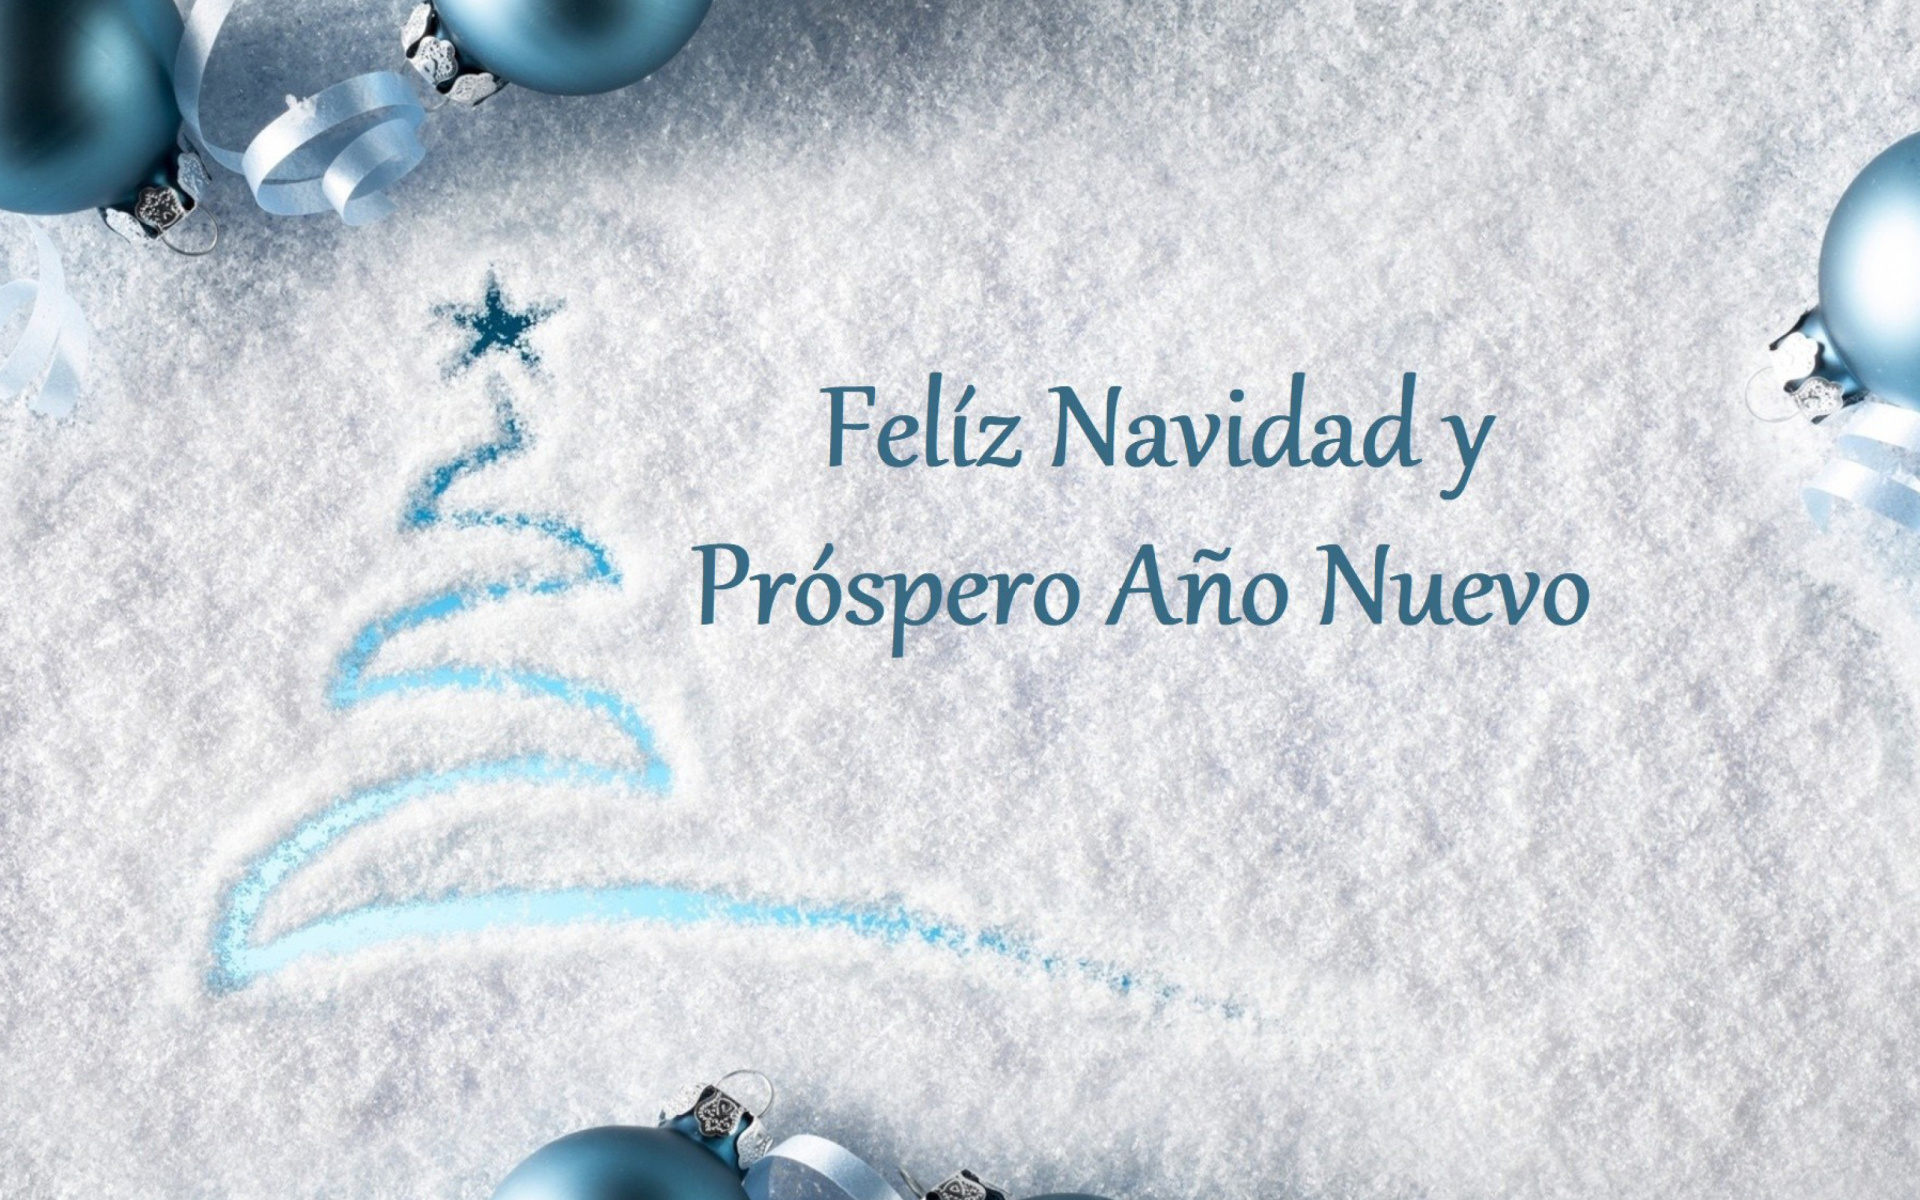 Feliz Navidad y Prospero Ano Nuevo wallpaper 1920x1200